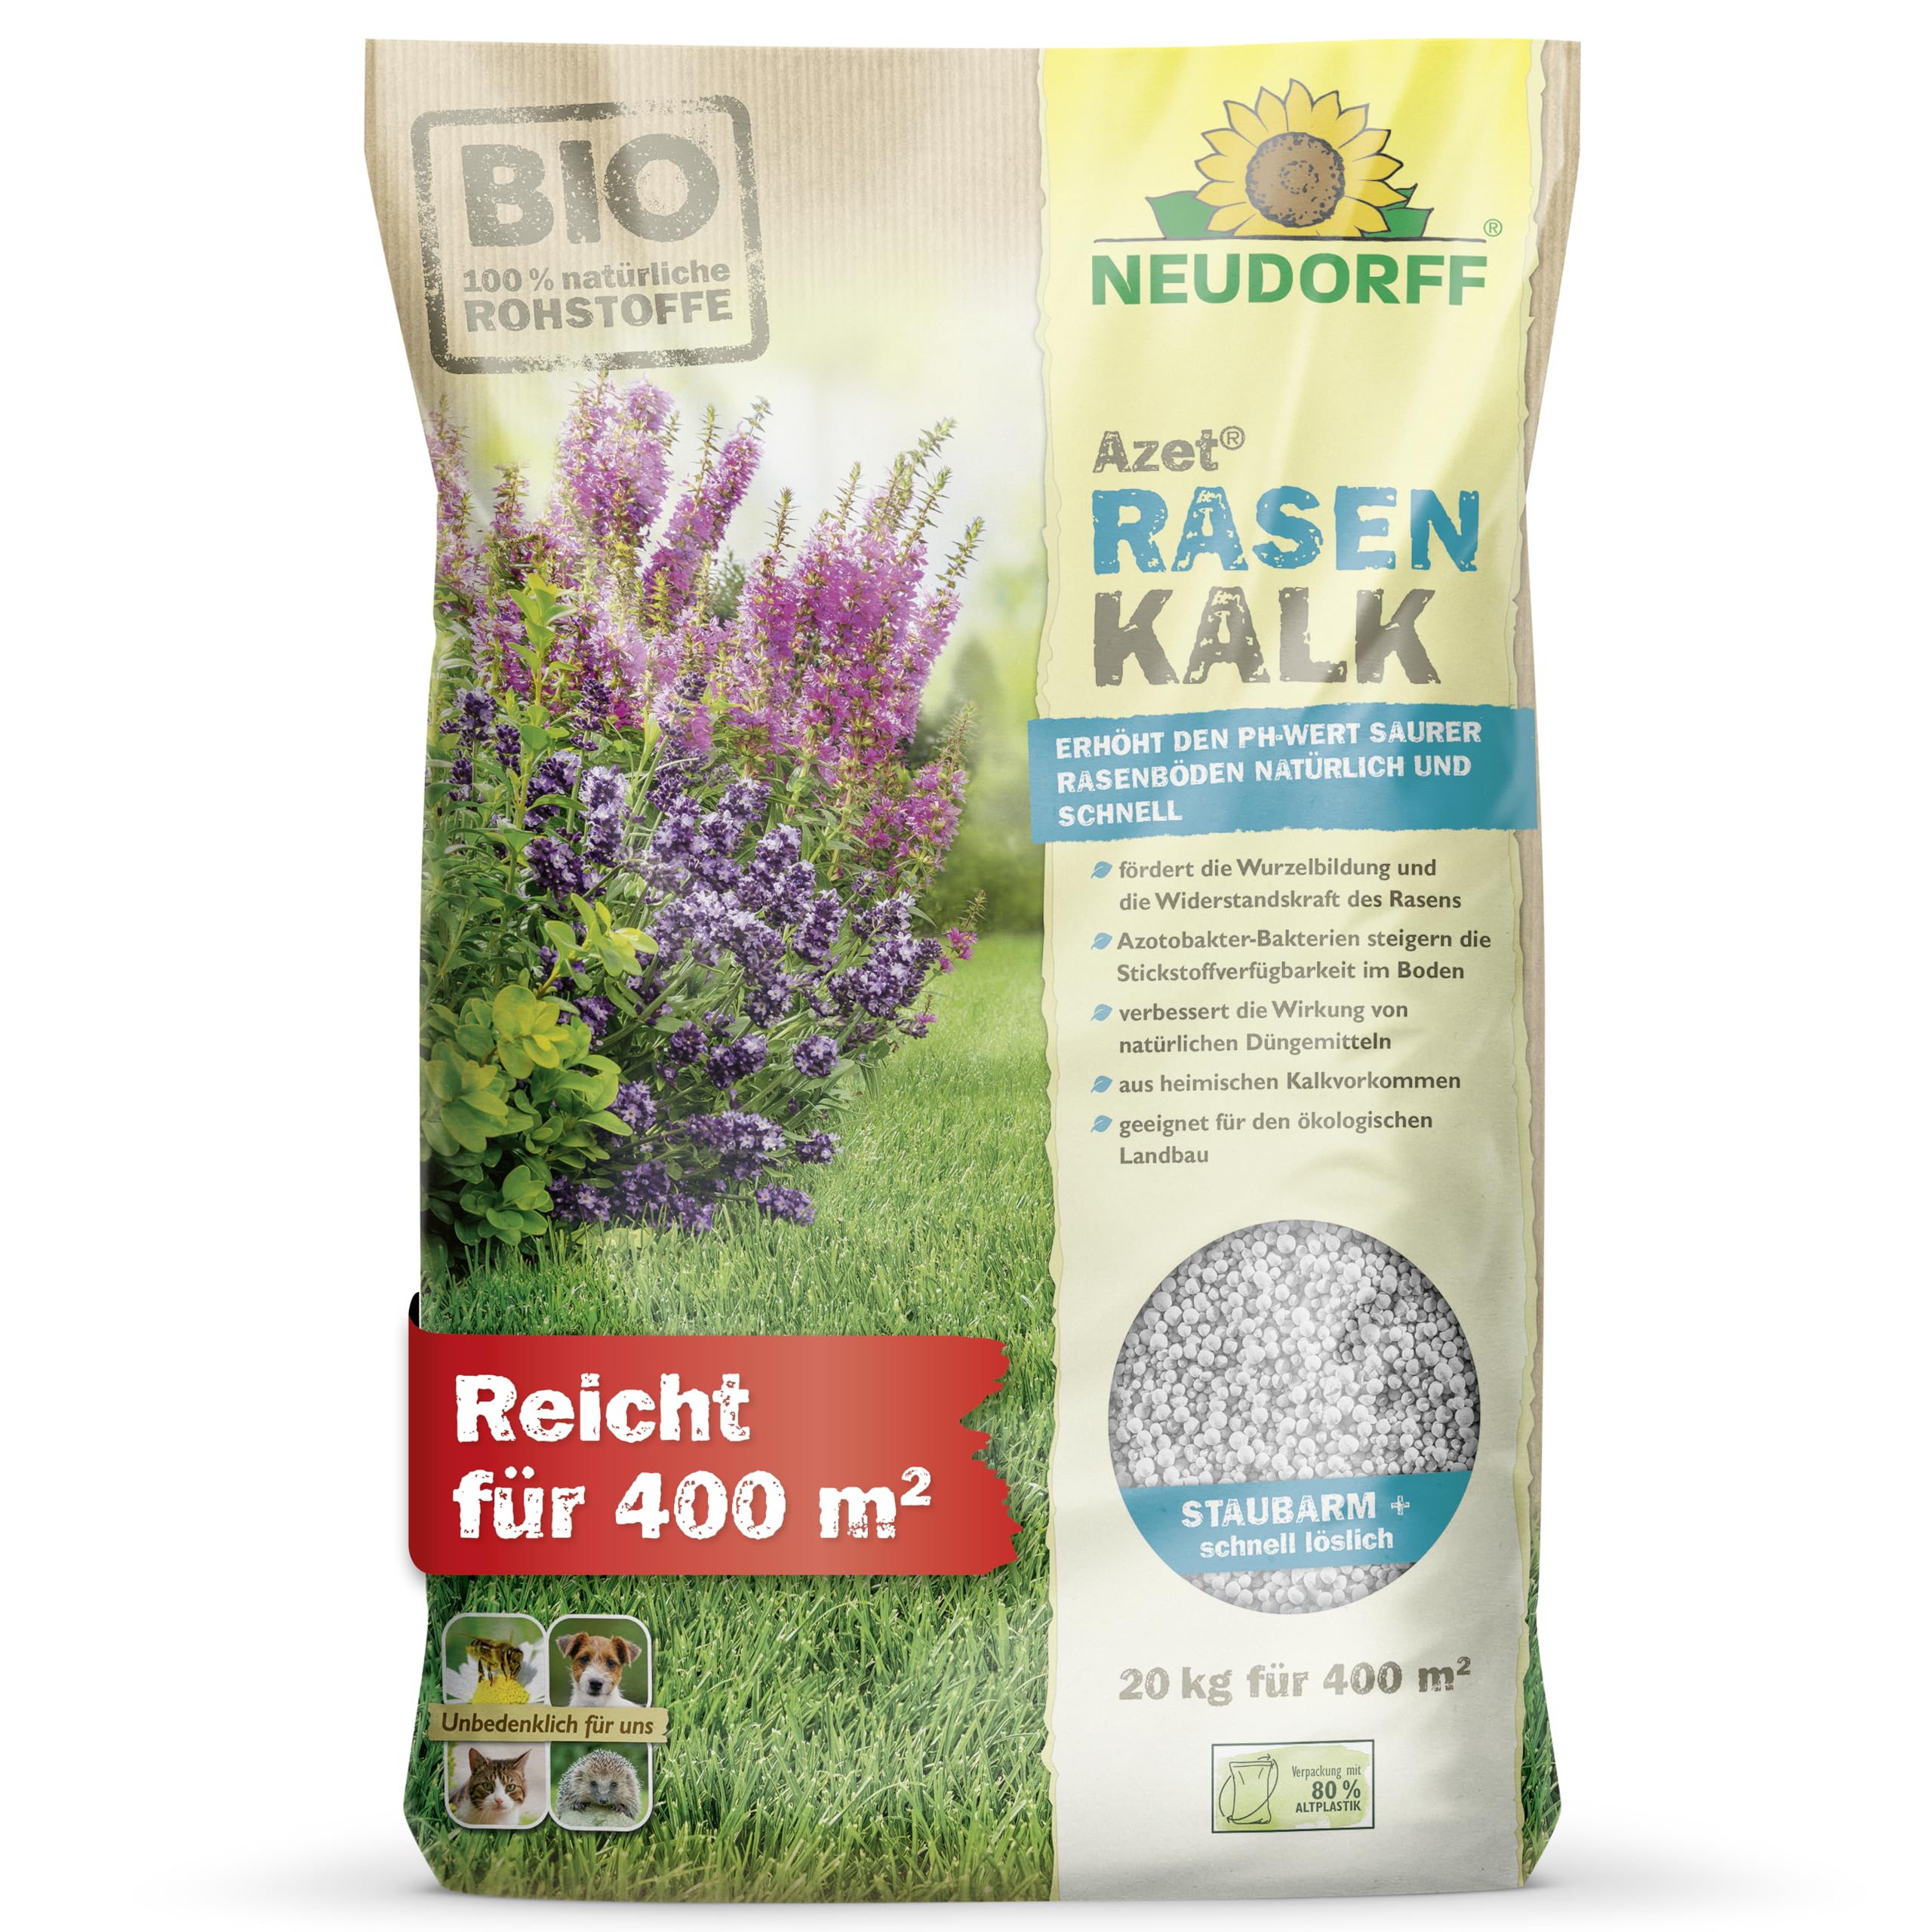 Neudorff Azet RasenKalk – Bio Rasenkalk erhöht den pH-Wert saurer Rasenböden schnell für einen kräftigen, grünen Rasen und beugt Moos vor, 20 kg für 400 m²